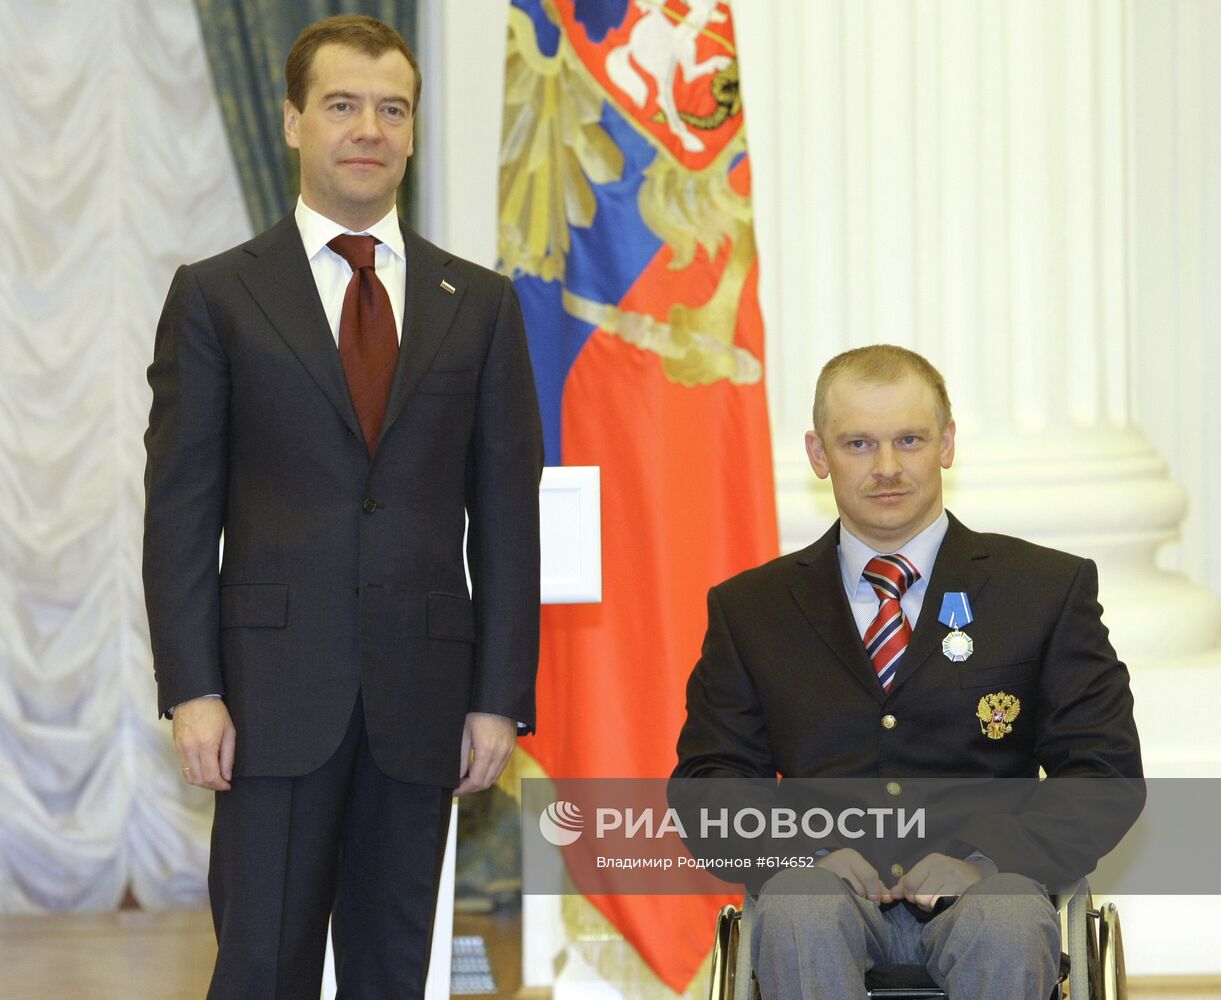 Д.Медведев вручил награды участниками Паралимпийских игр